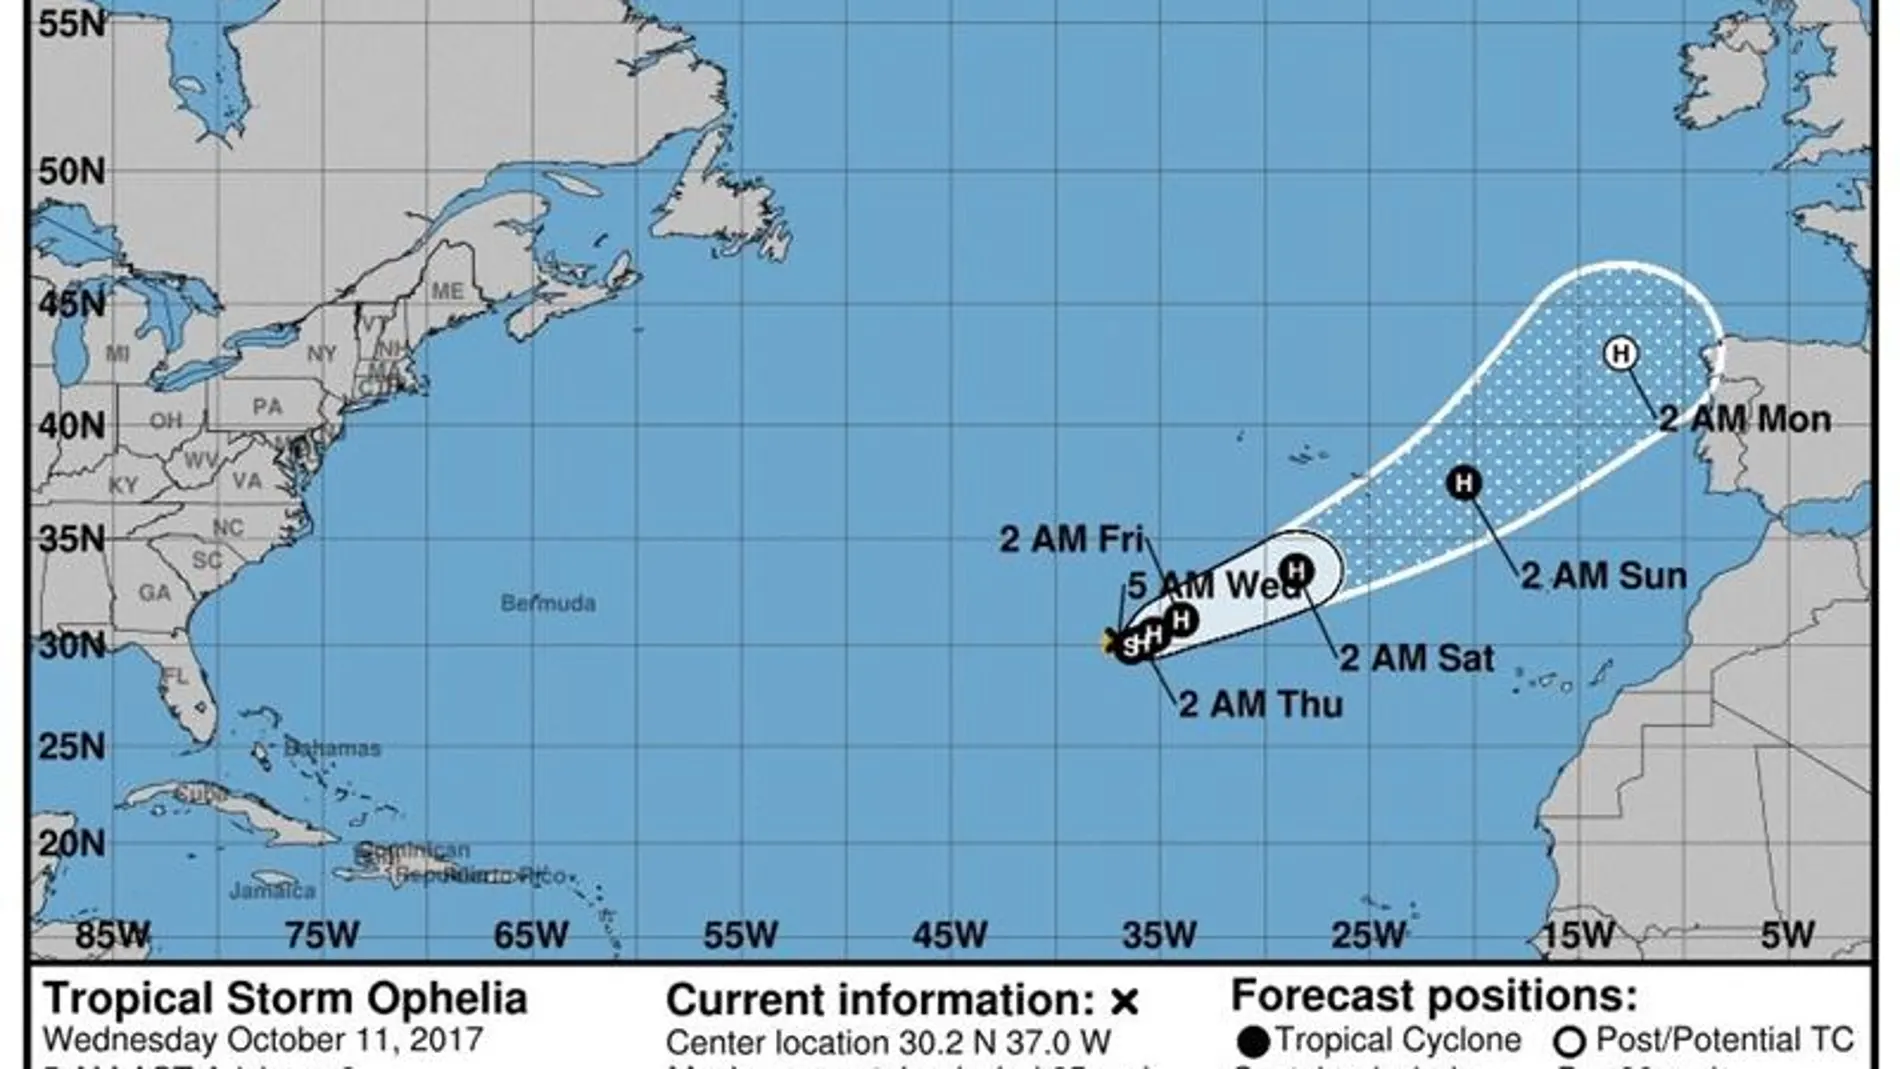 Gráfico cedido que muestra la trayectoria de tres días de la tormenta tropical Ophelia